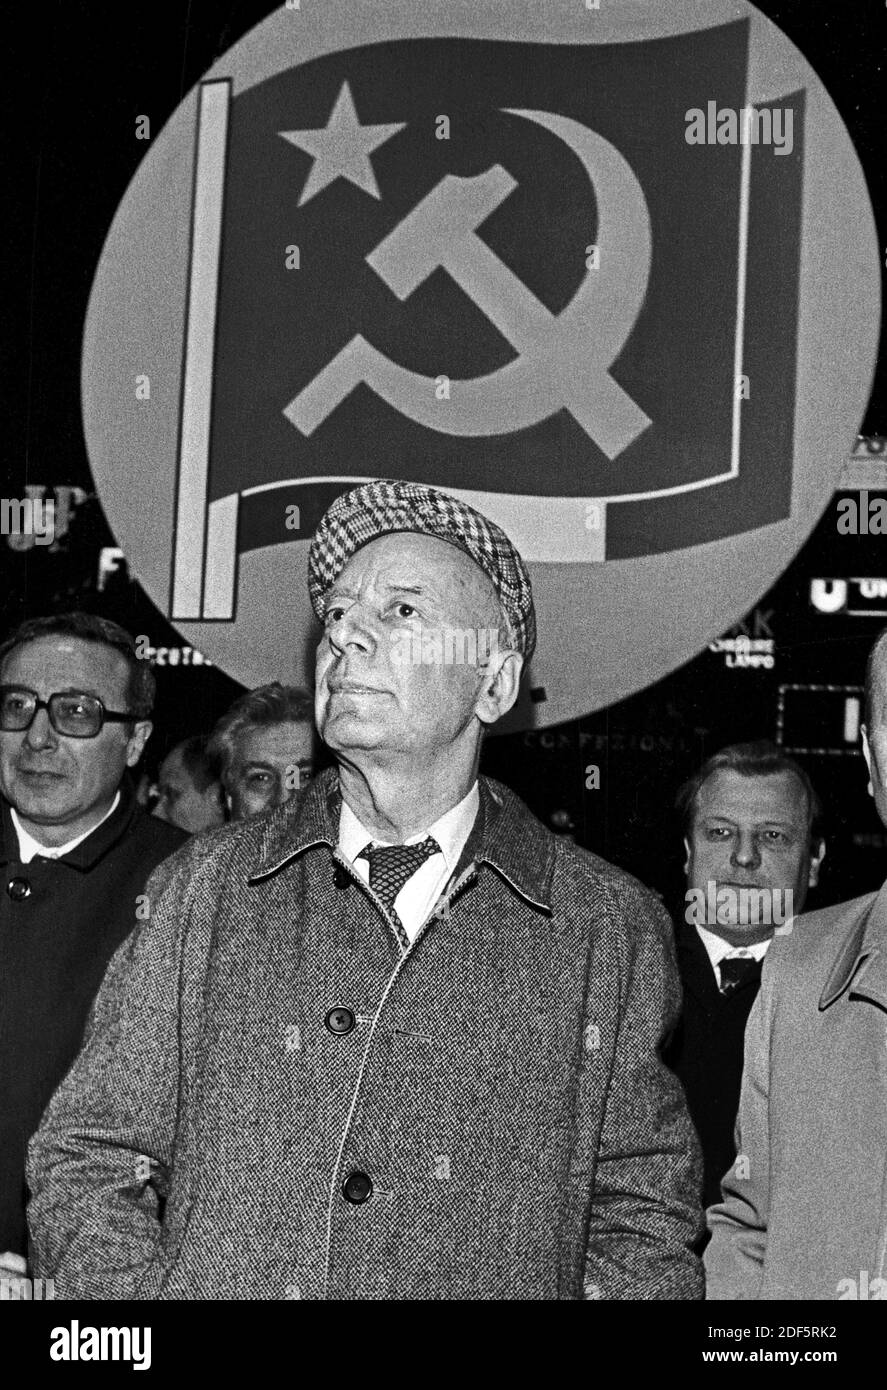 - Milan, comizio di Giancatrlo Pajetta, leader del Partito Comunista (aprile 1976) - Milan, rassemblement de Giancatrlo Pajetta, leader du Parti communiste (avril 1976) Banque D'Images